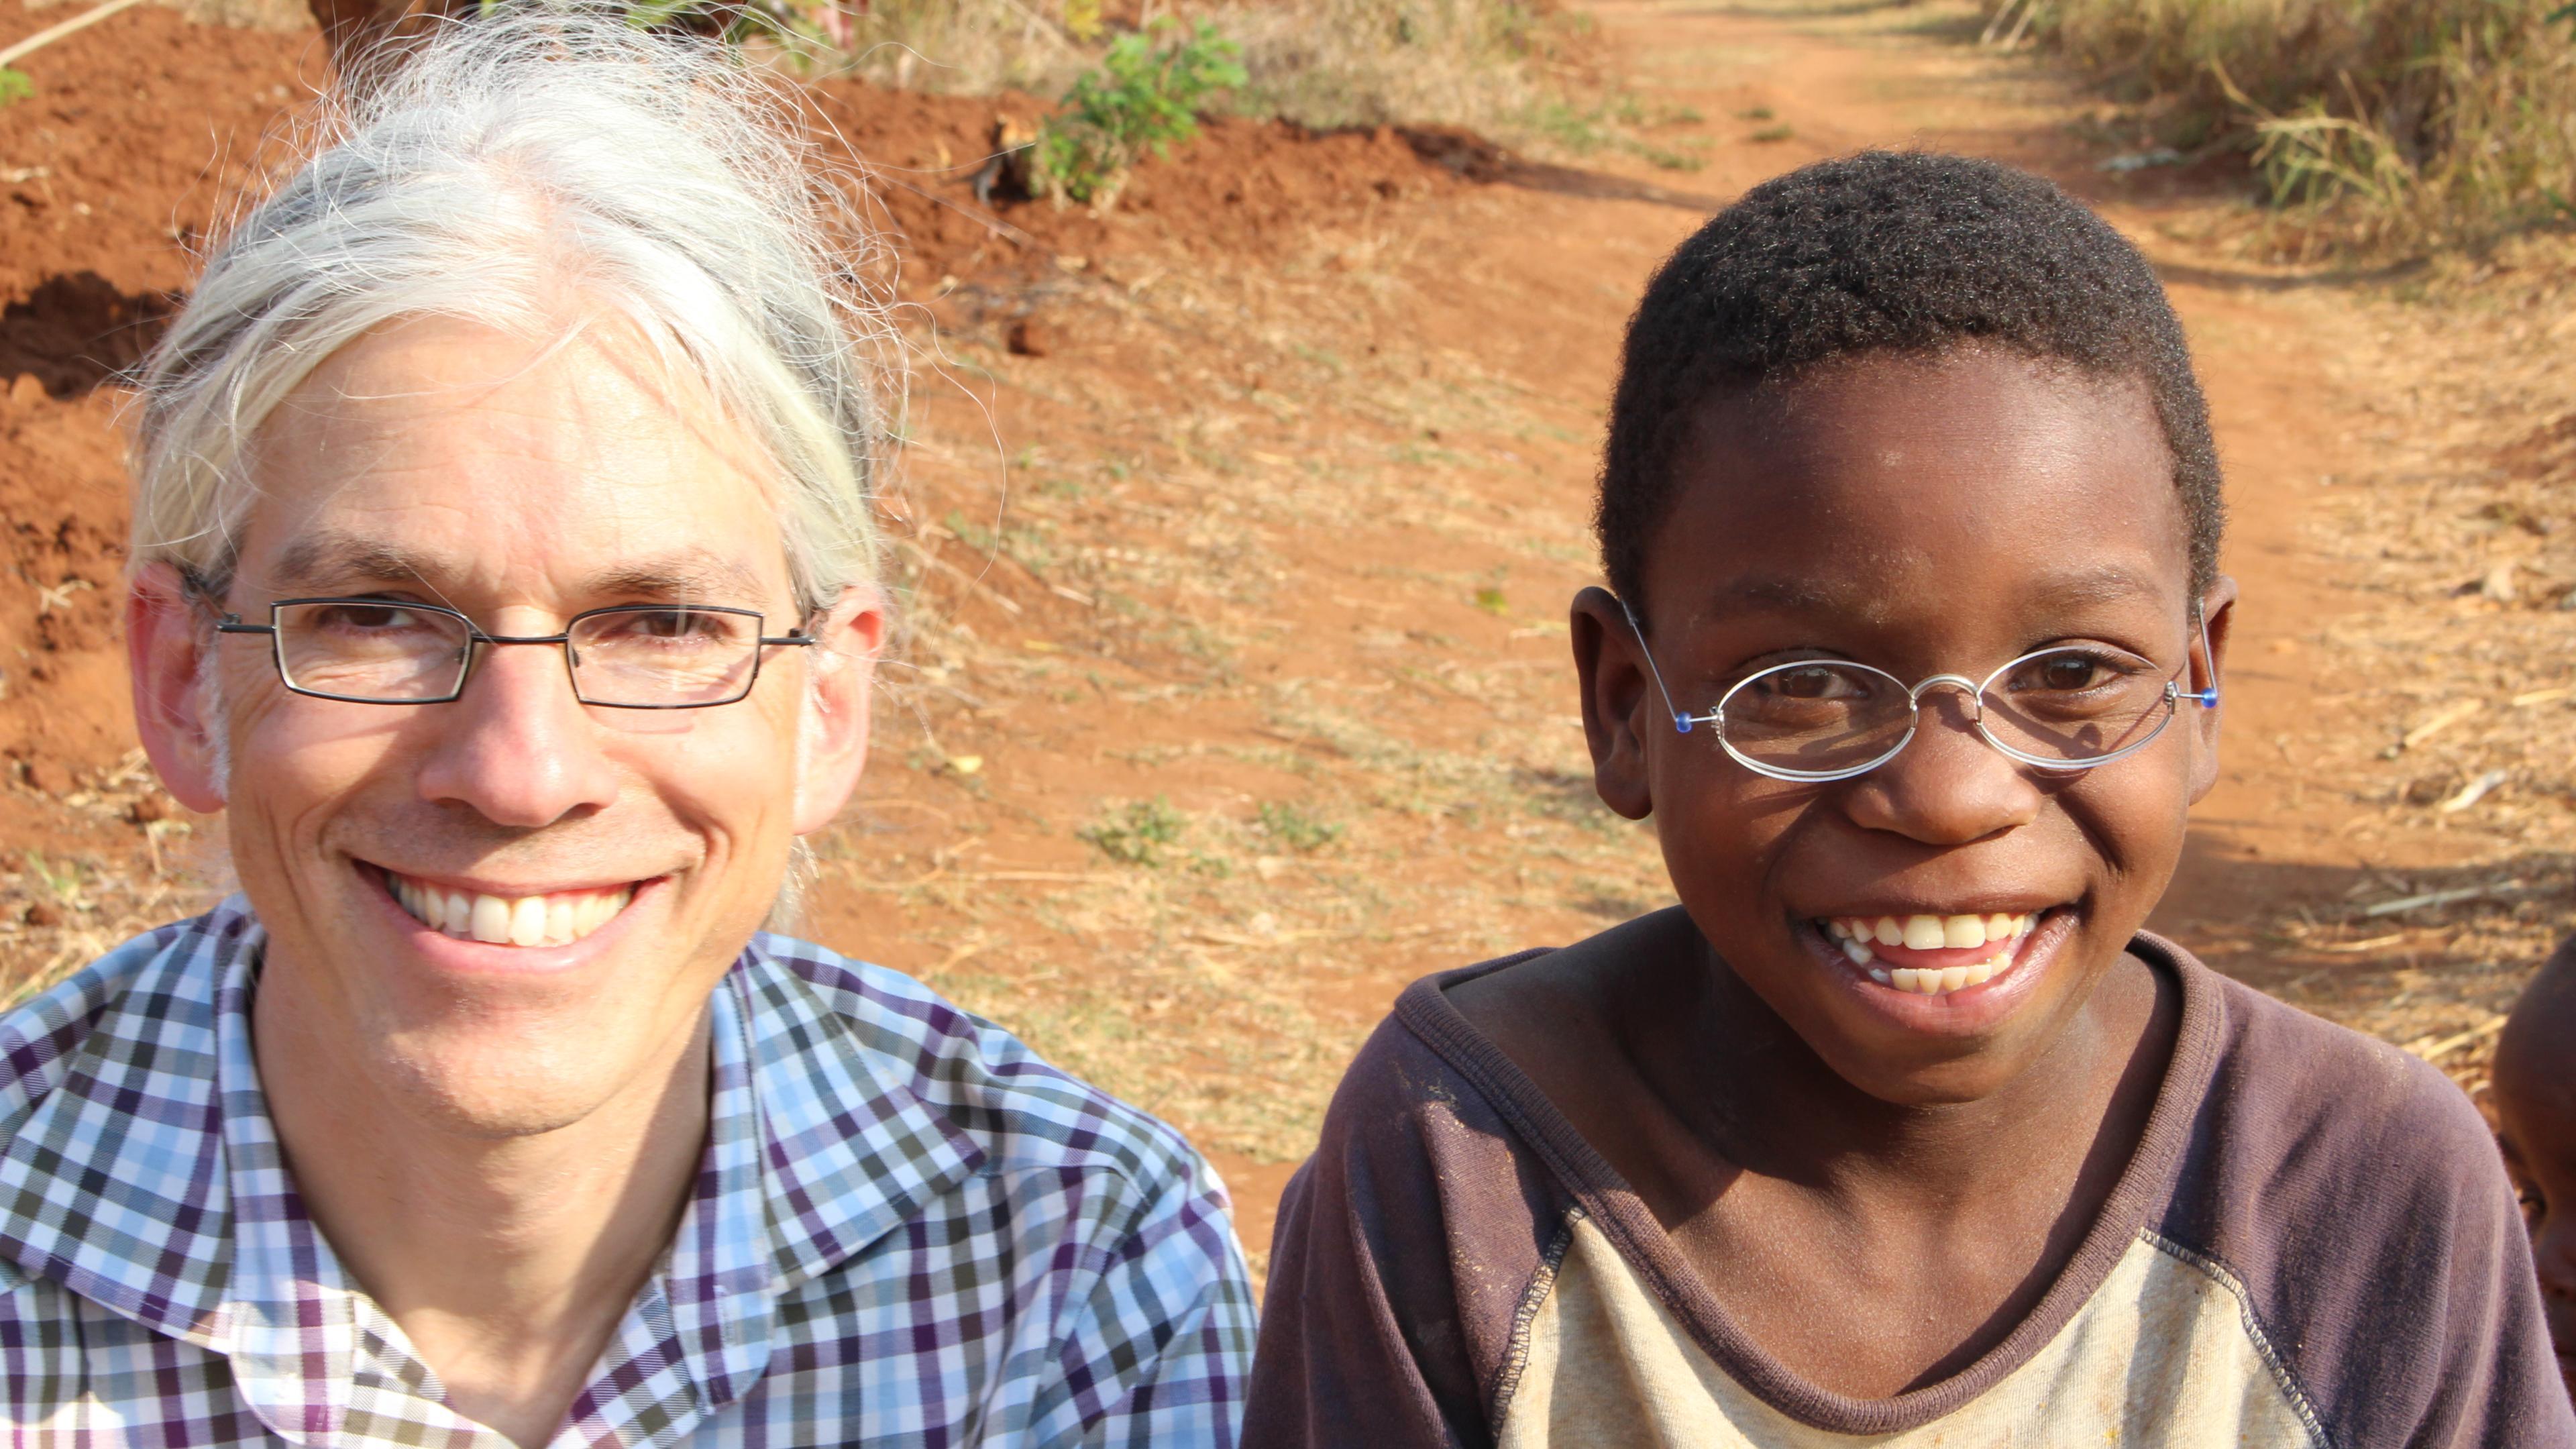 Martin Aufmuth with a boy in Malawi